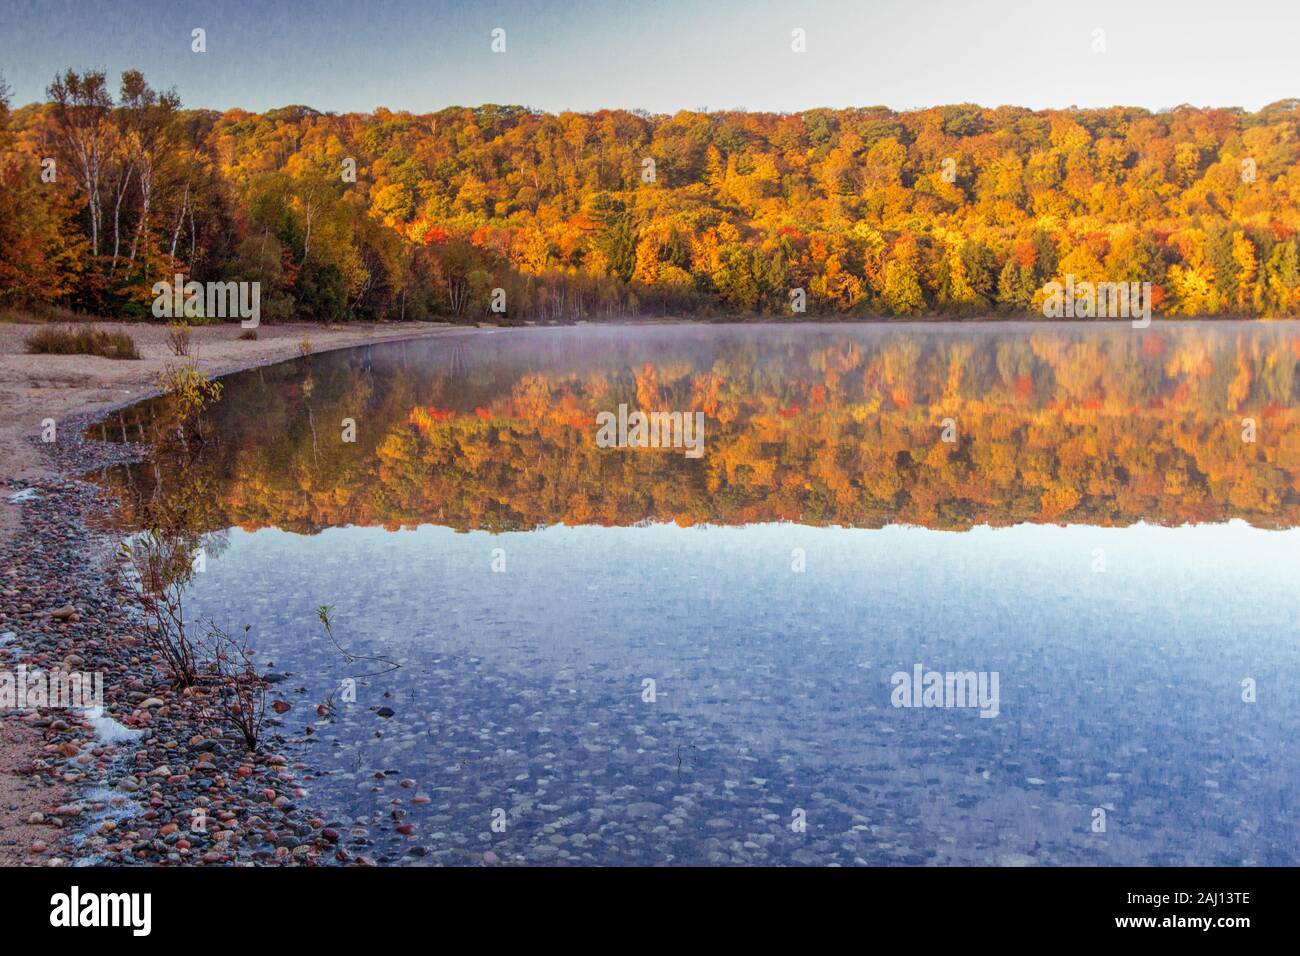 Herbst See Reflexionen. Lebendige Farben des Herbstes im nördlichen Michigan Monokel See an der Hiawatha National Forest, spiegelt sich in der oberen Halbinsel. Stockfoto